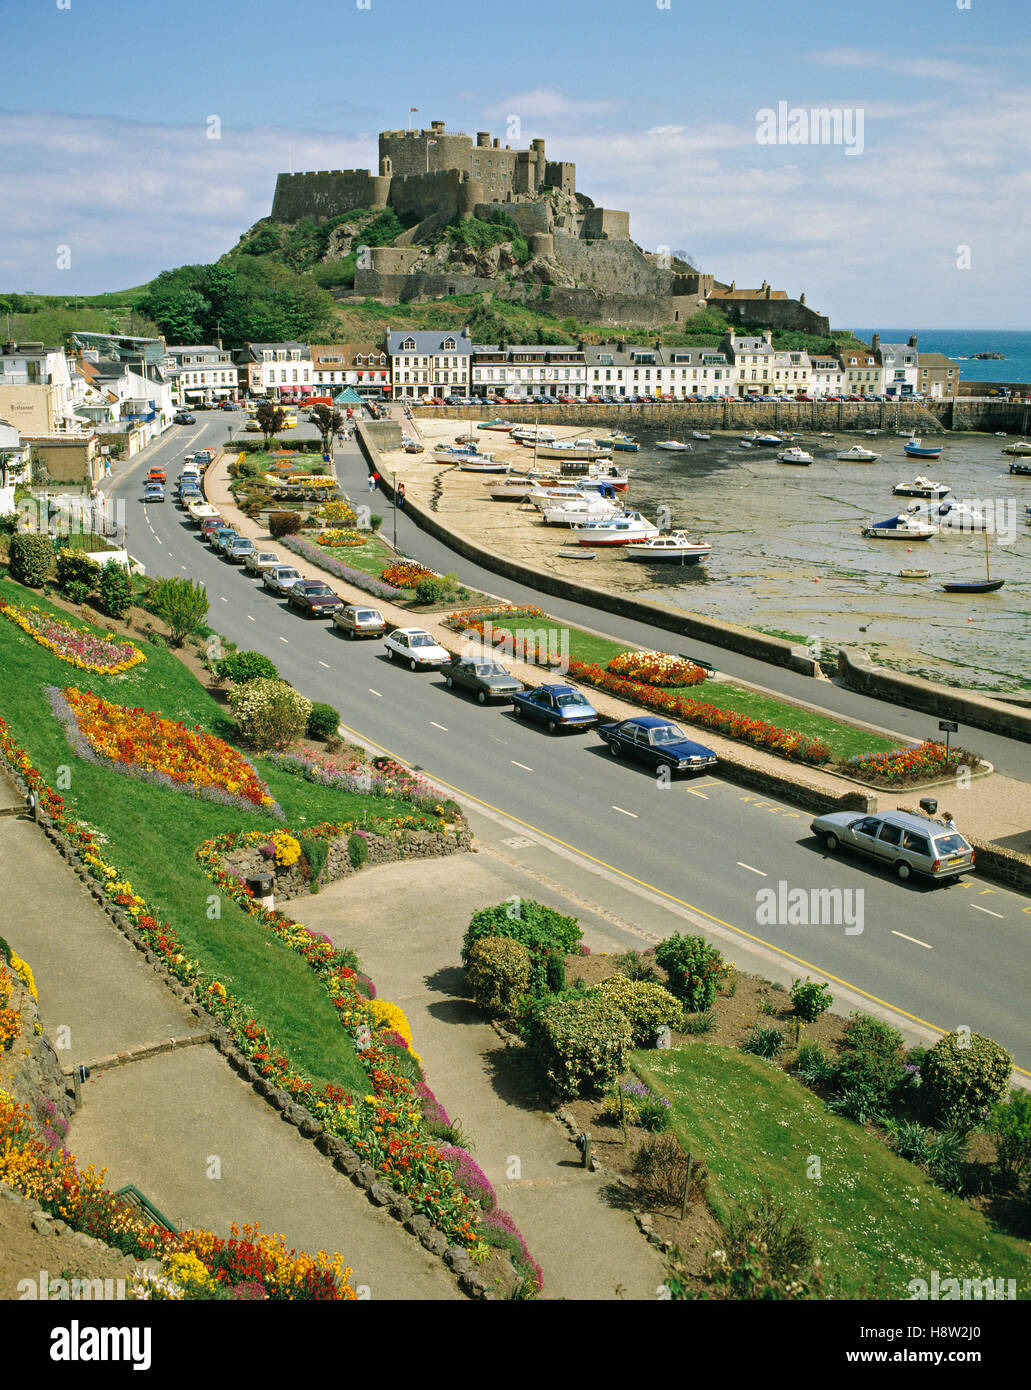 Gorey Harbour et le Mont Orgueil Castle, Jersey, Channel Islands, Royaume-Uni, Europe Banque D'Images